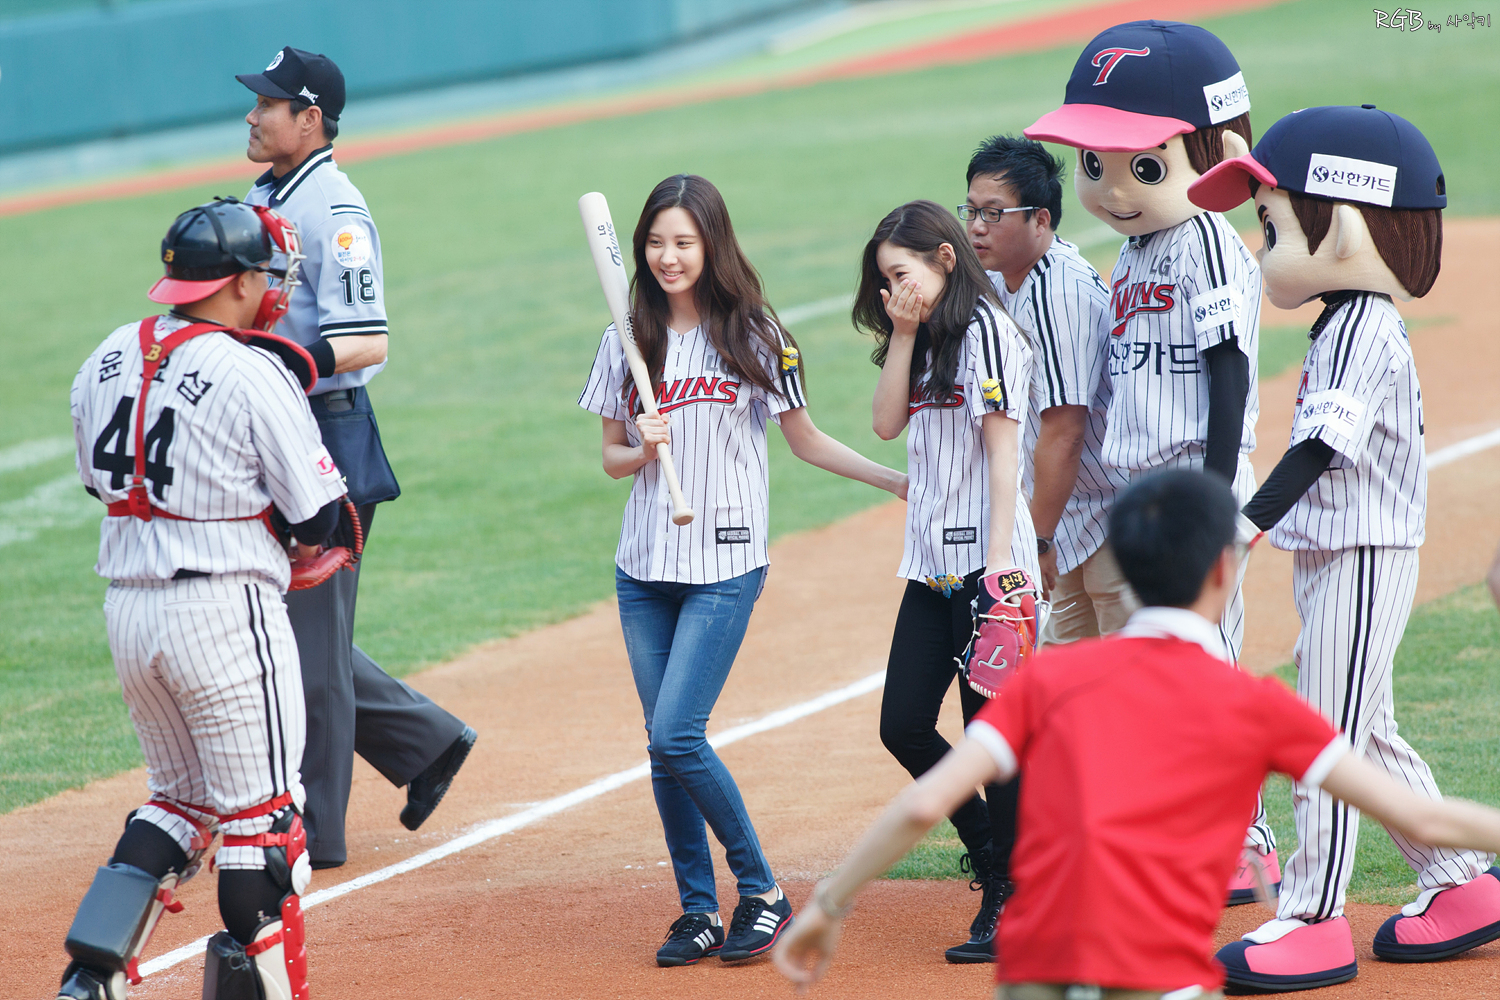 [PIC][27-08-2013]TaeYeon và SeoHyun ném bóng mở màn cho trận đấu bóng chày tại SVĐ Jamsil vào chiều nay MENG0165